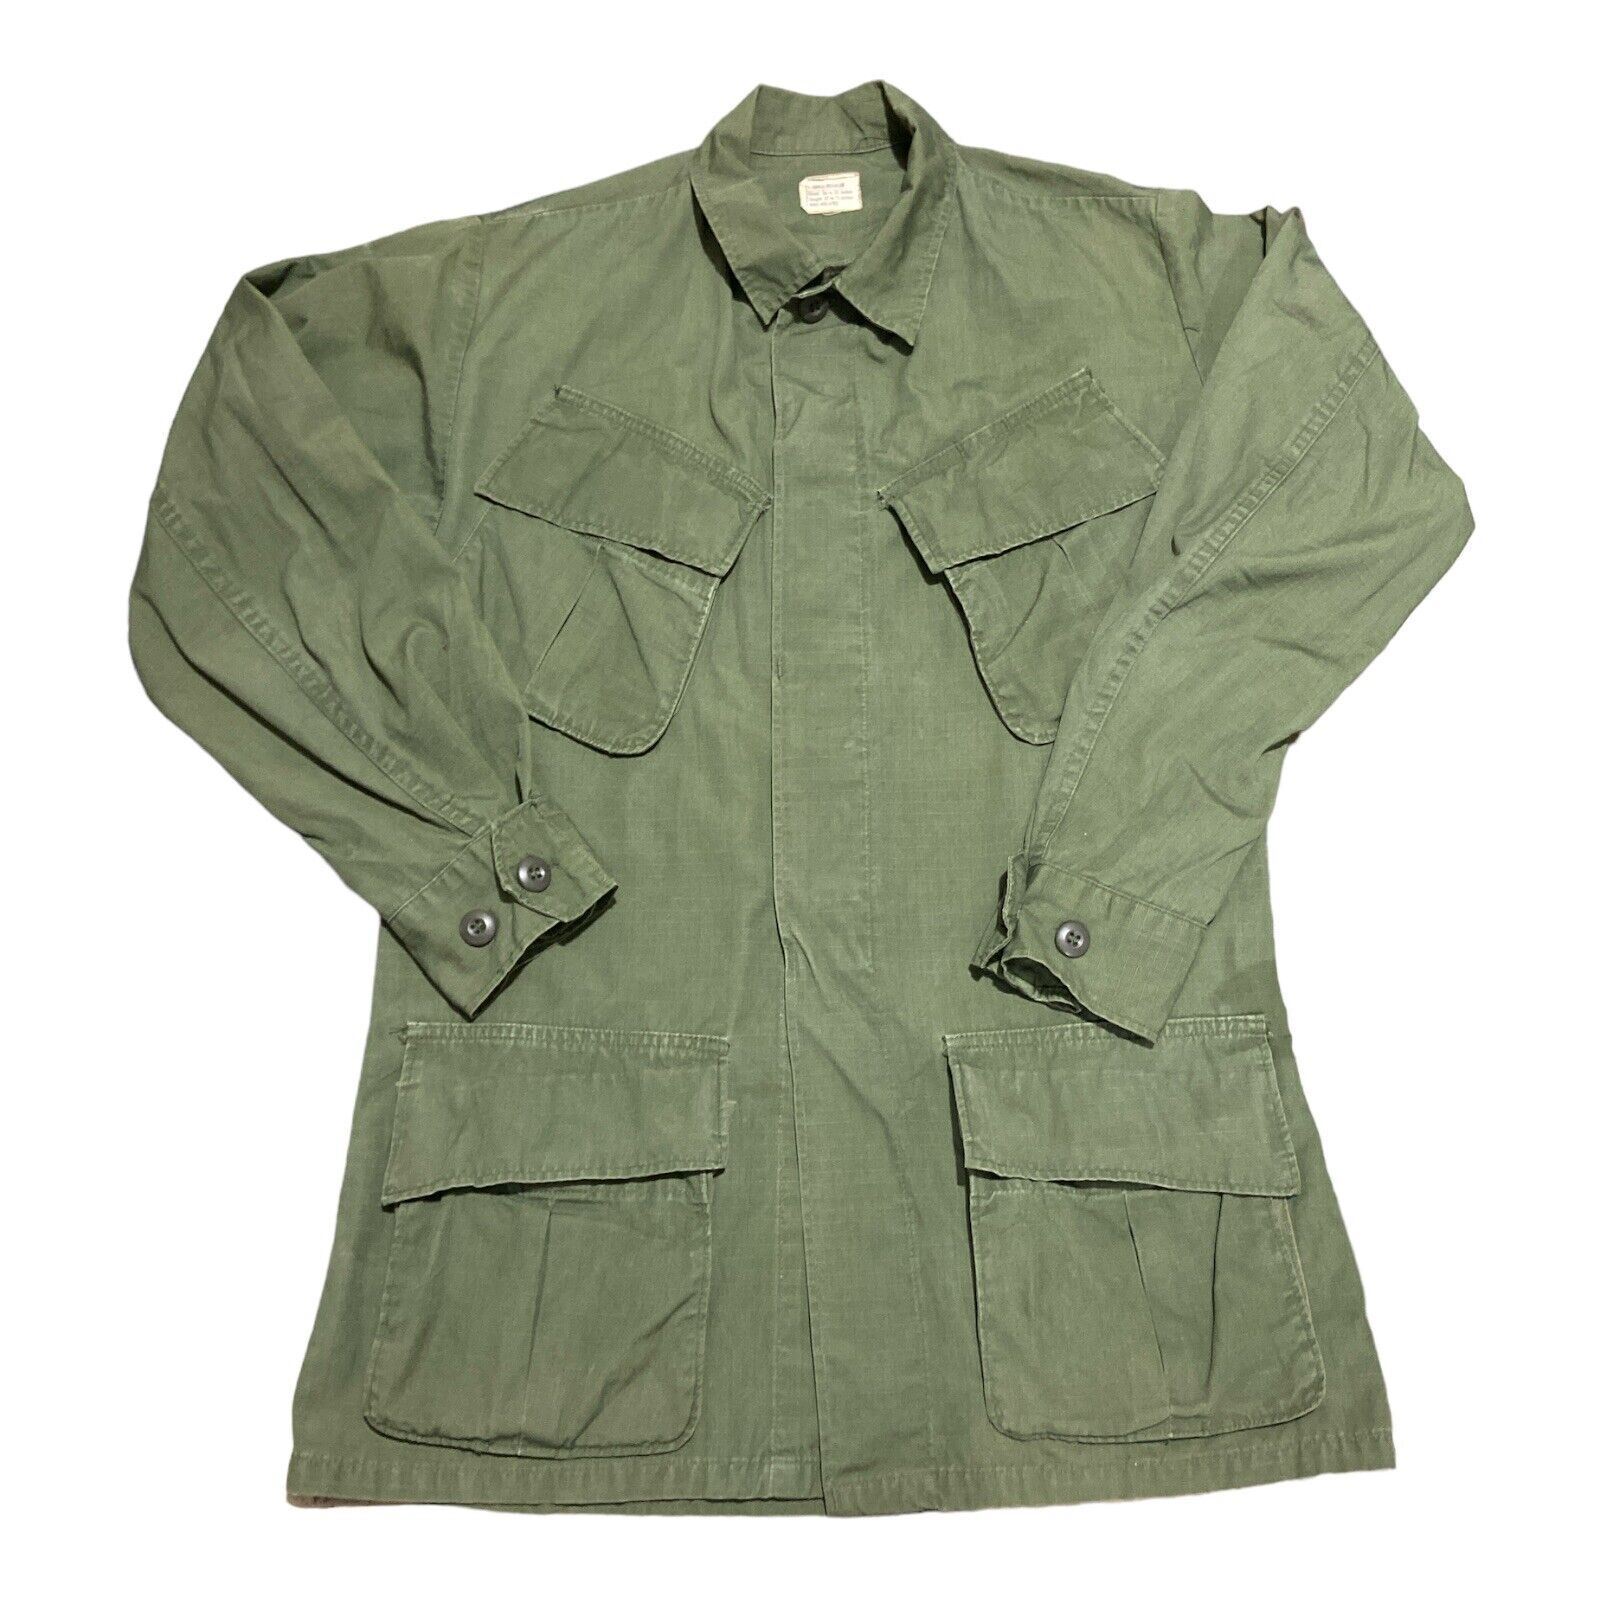 Vintage Men\'s Military Jacket 70\'s OG 107 Cotton Wind Resistant Poplin Class 1